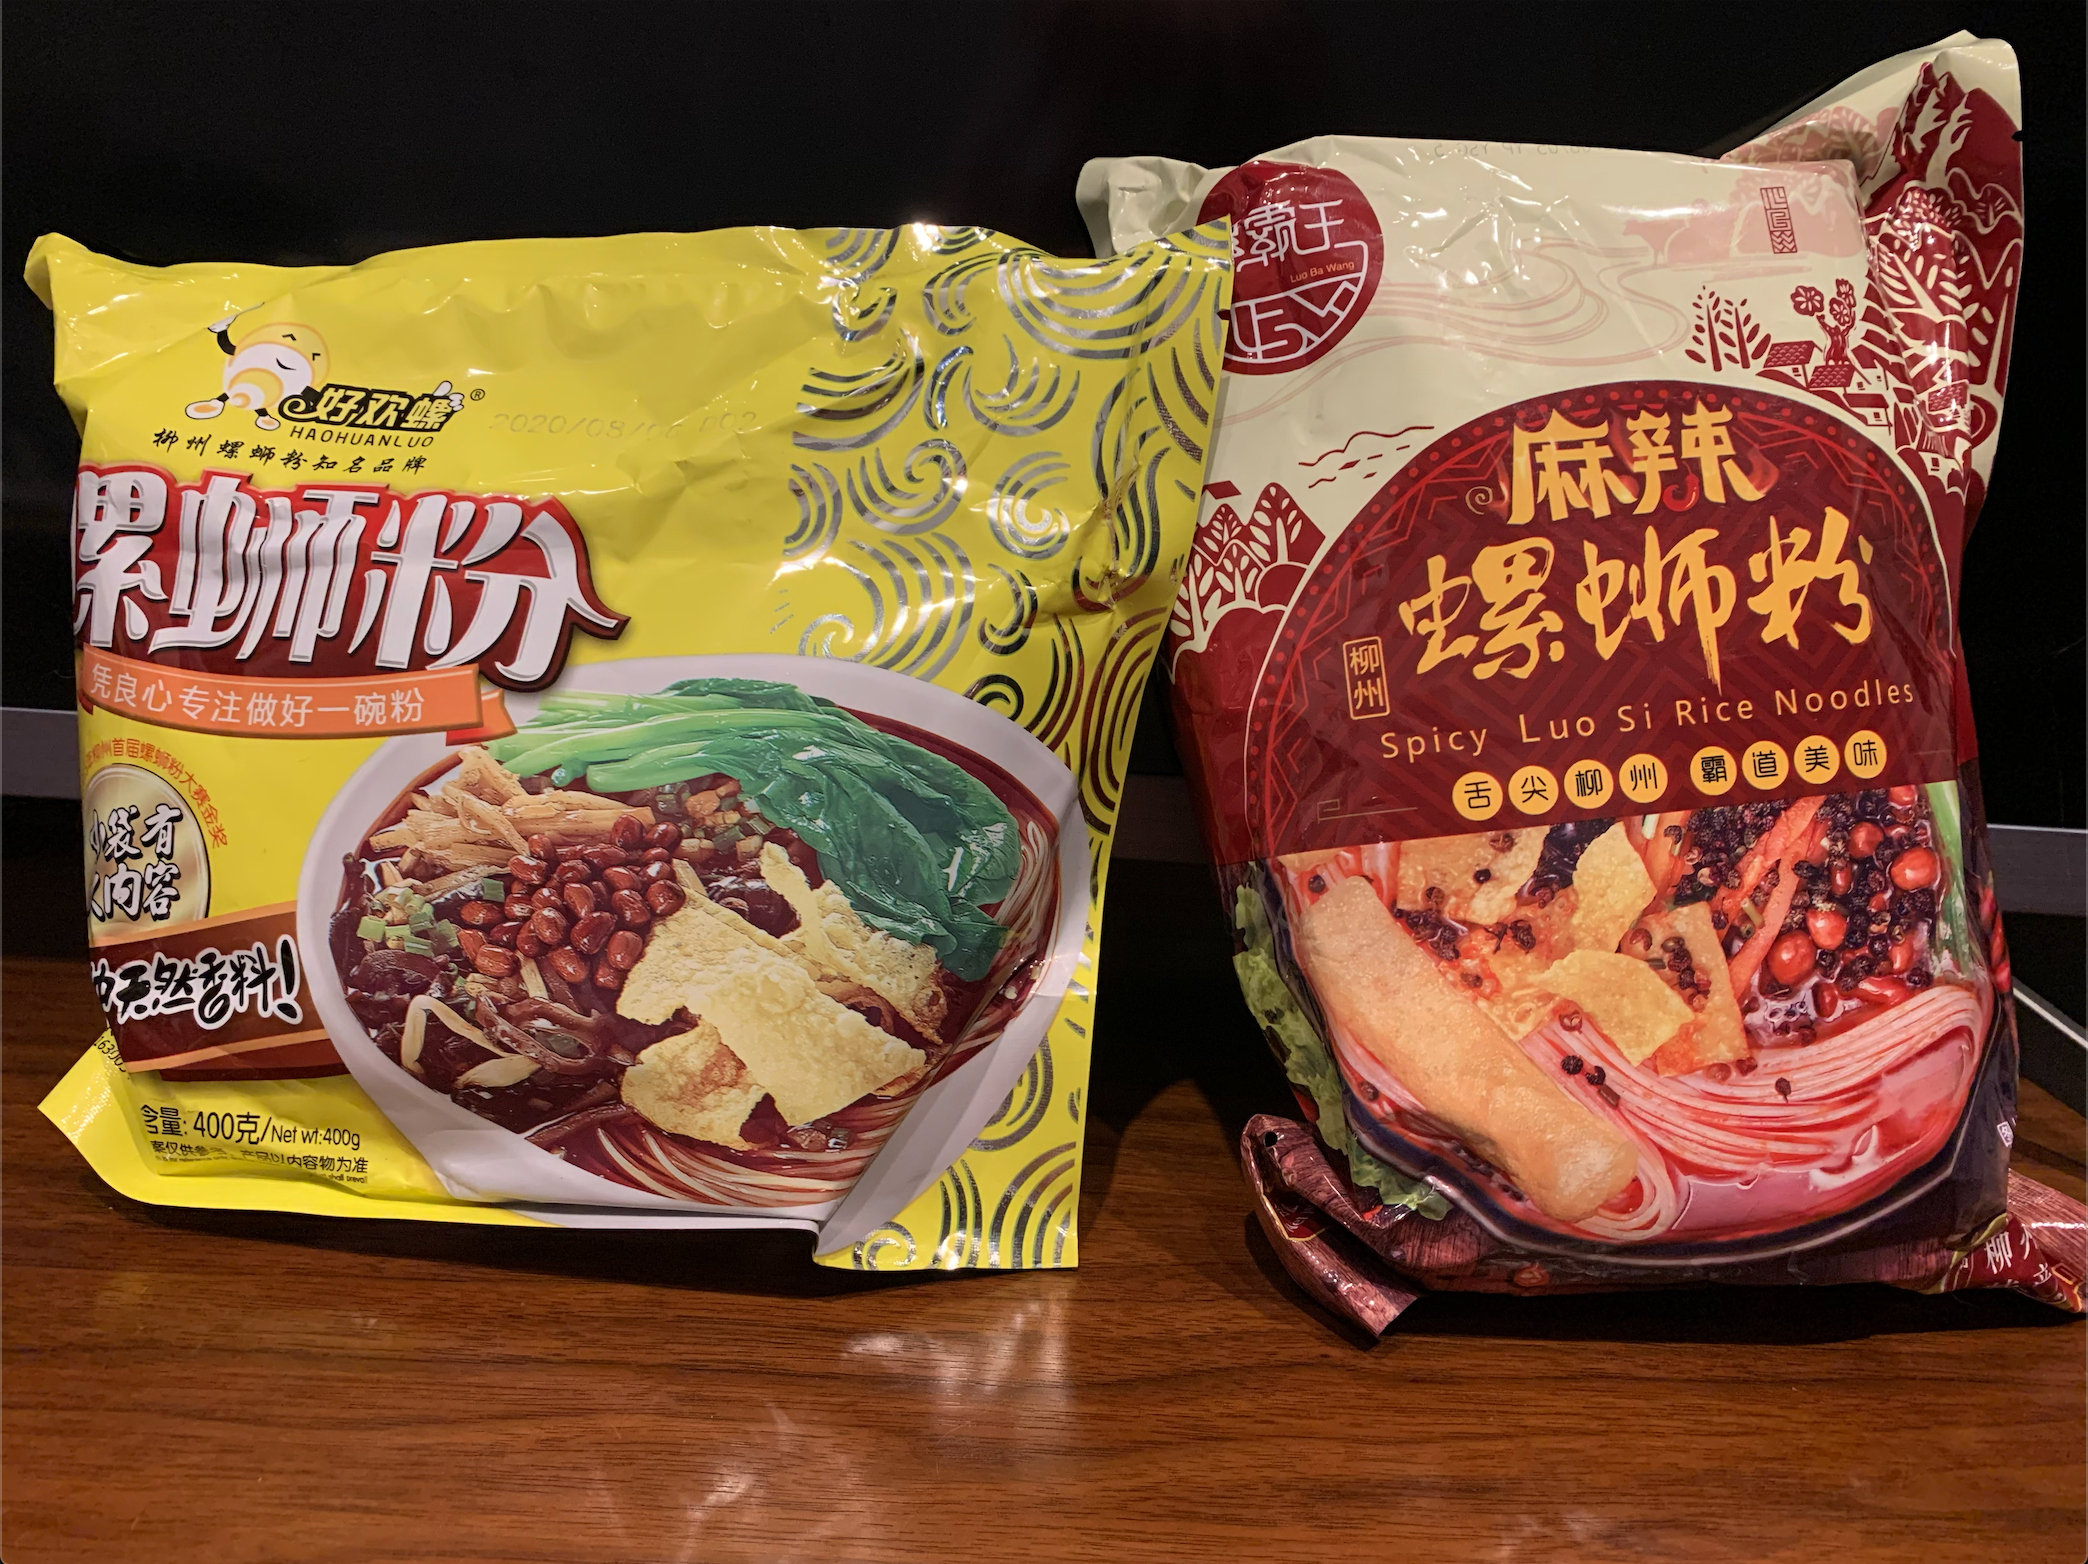 臭豆腐 はもう古い 今中国の若者がどハマりの臭いけど辛くて美味しい食べ物 映像制作 動画制作ブログ 株式会社ムービーインパクト